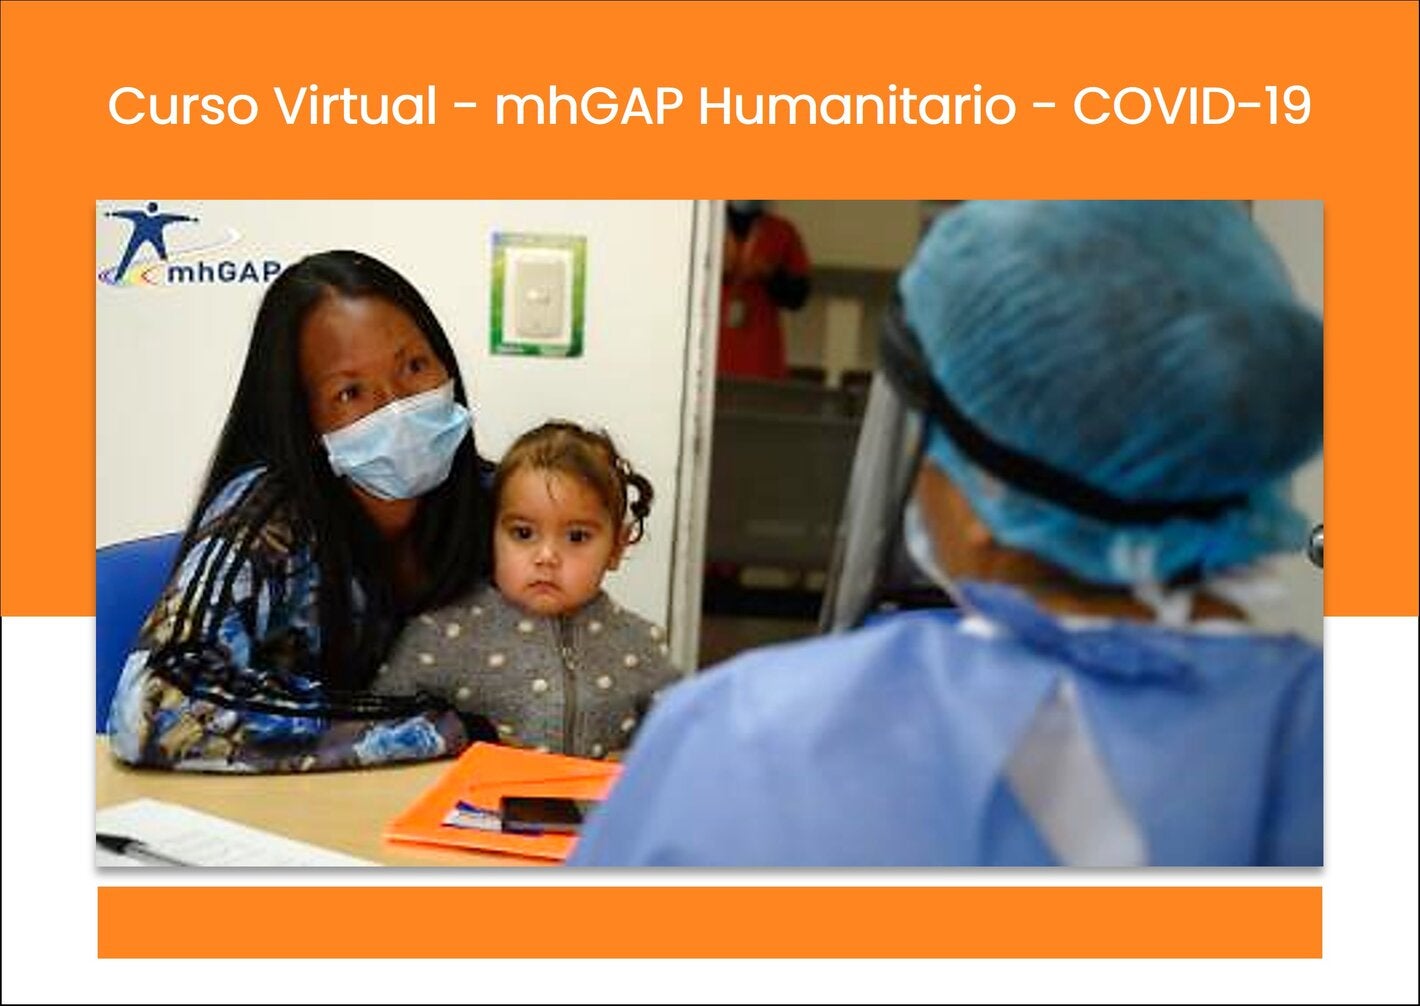 Lanzamiento del curso virtual de mhGAP humanitario